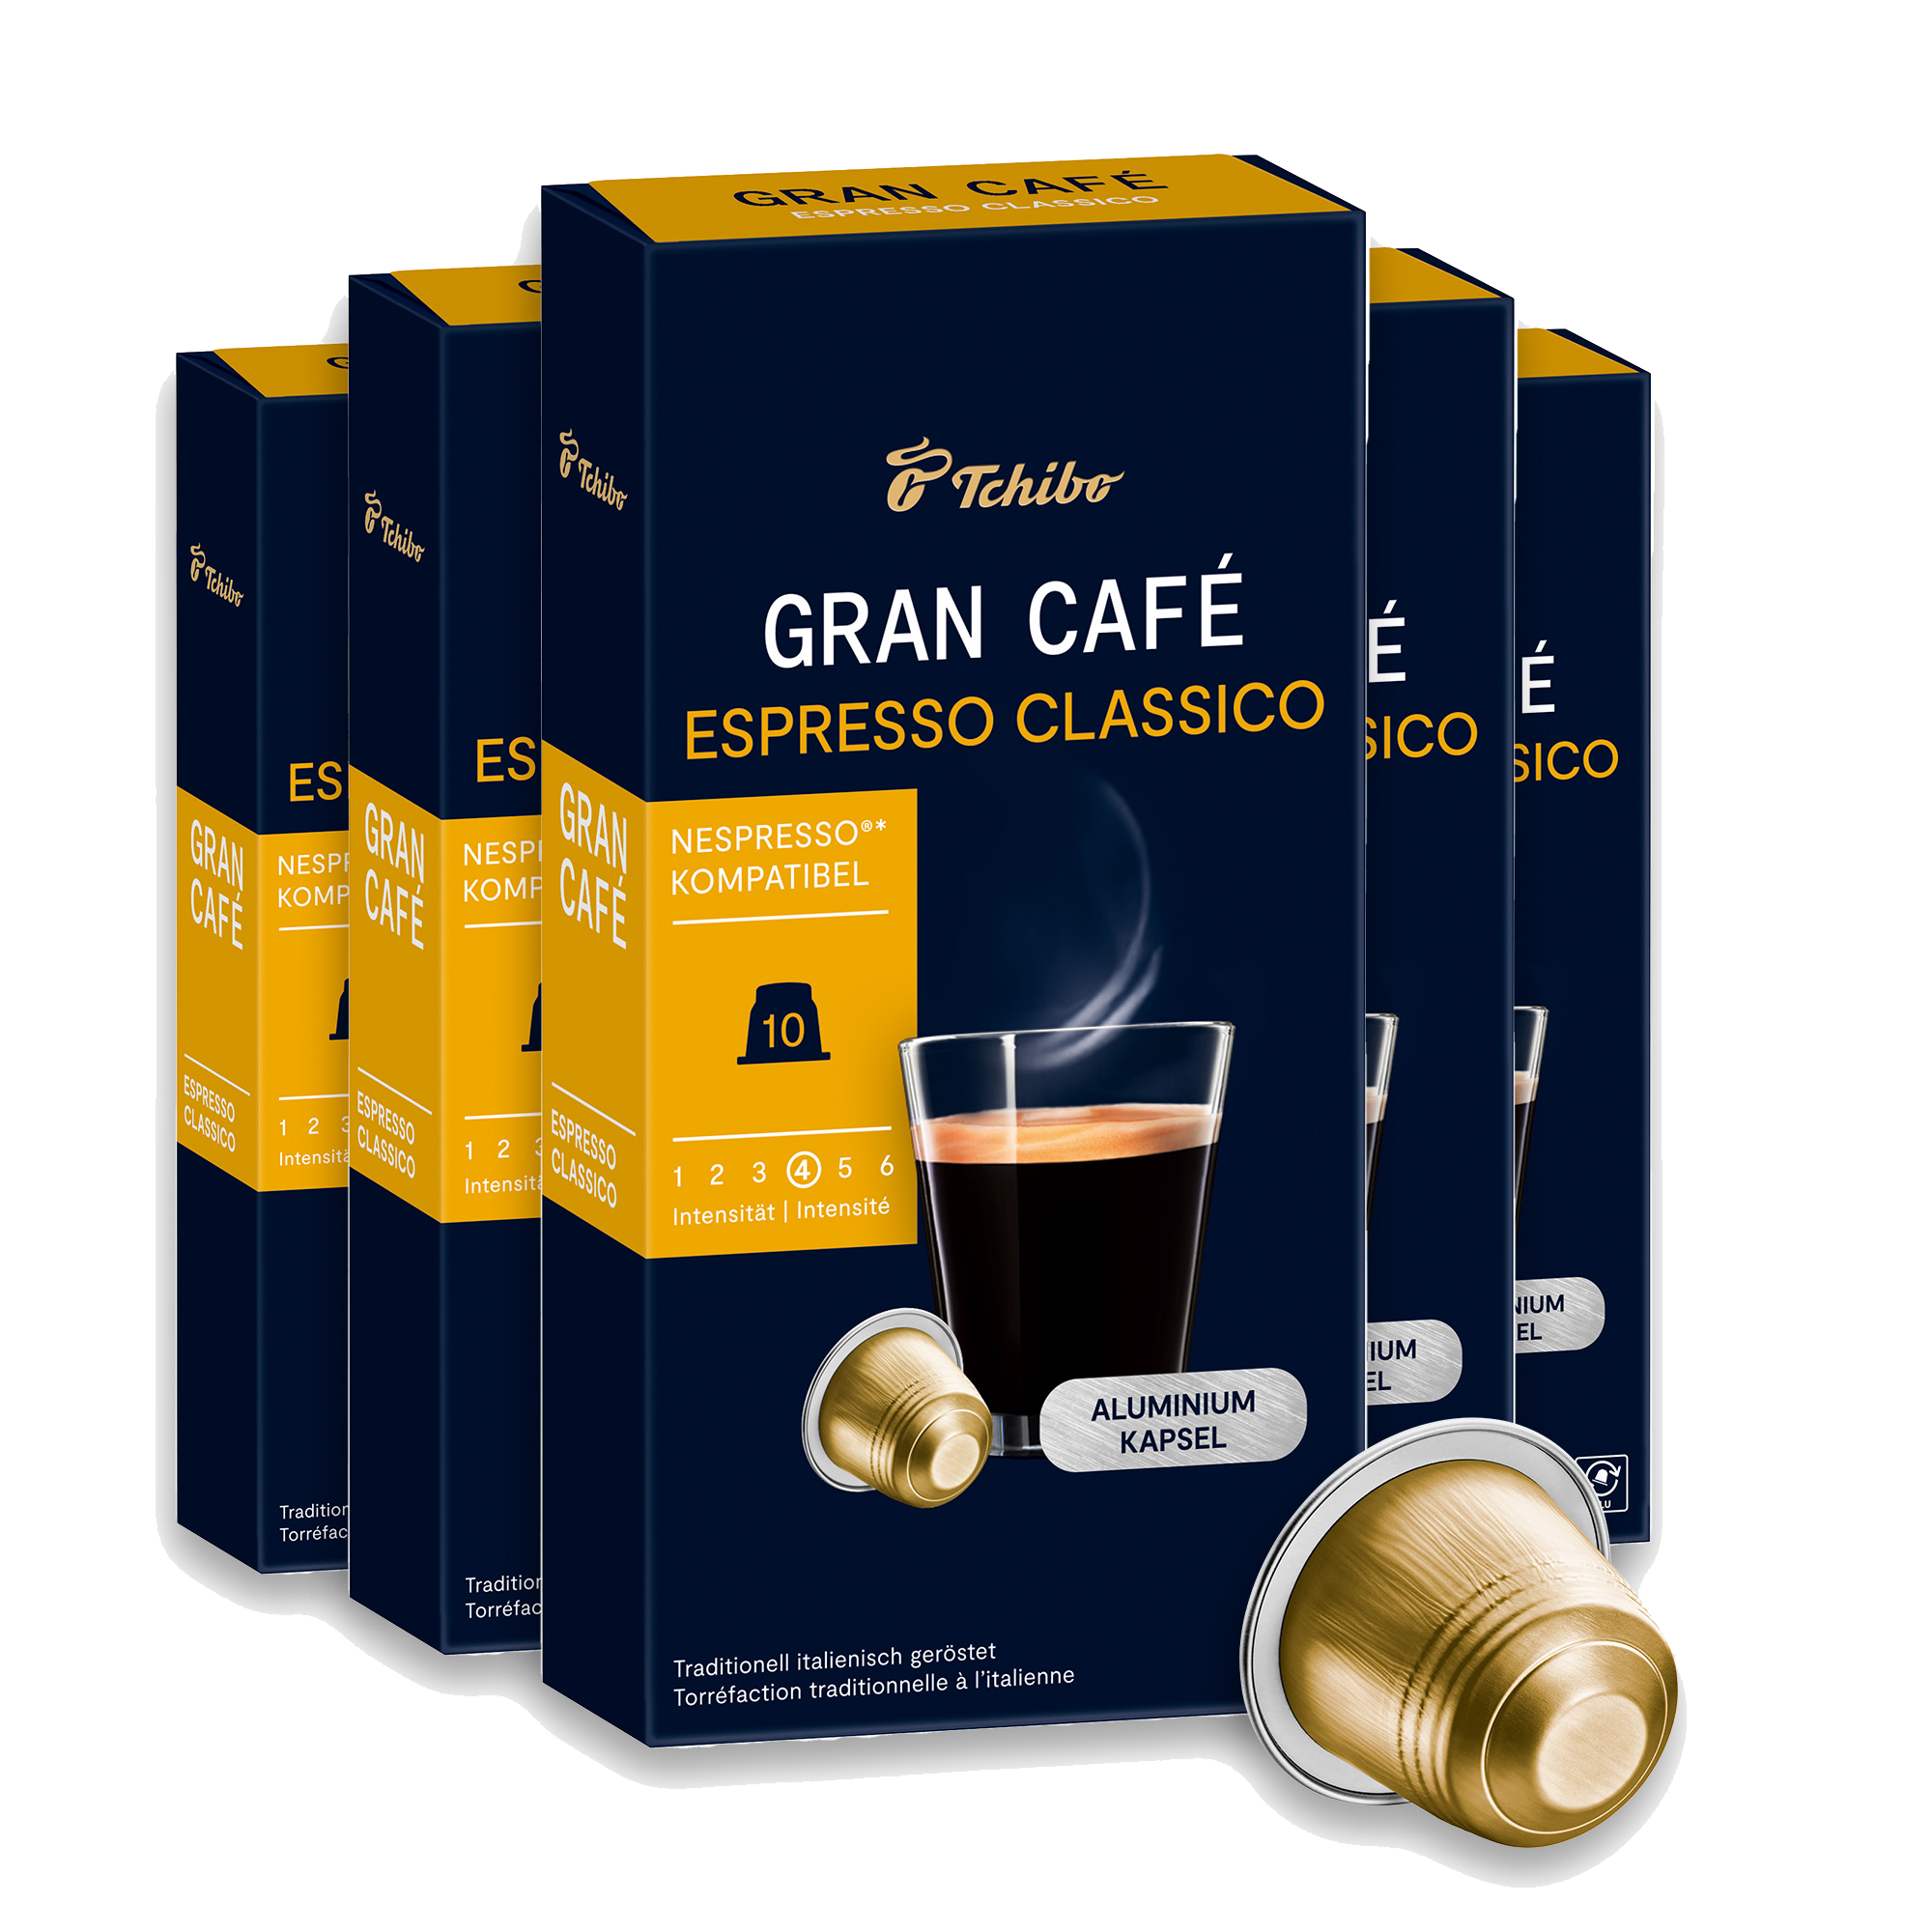 Gran Café Espresso Classico (Subscription)